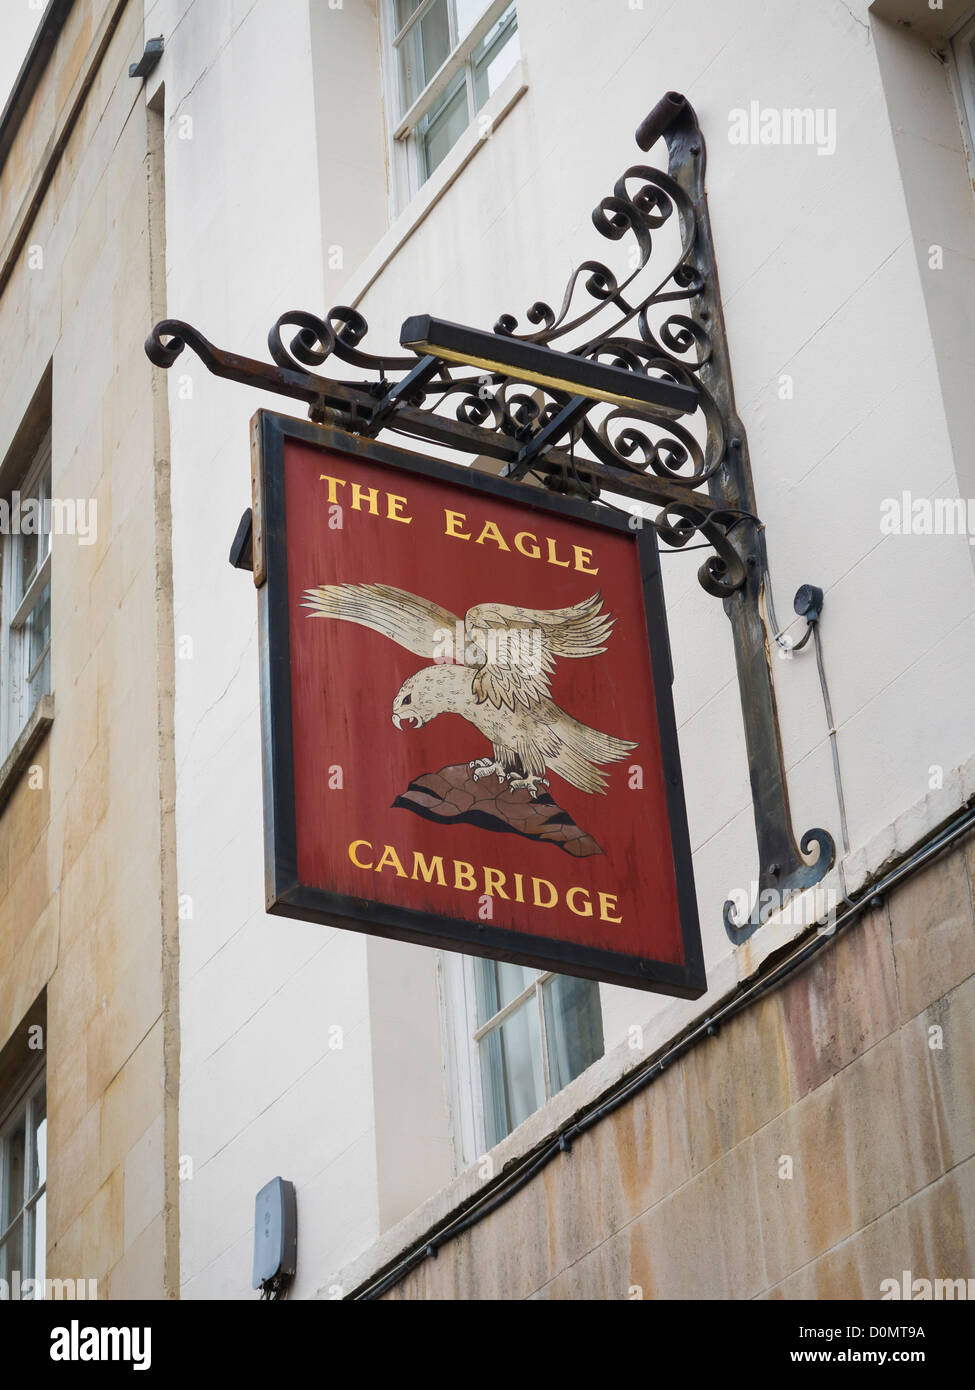 L'aigle enseigne de pub, Cambridge, England, UK Banque D'Images